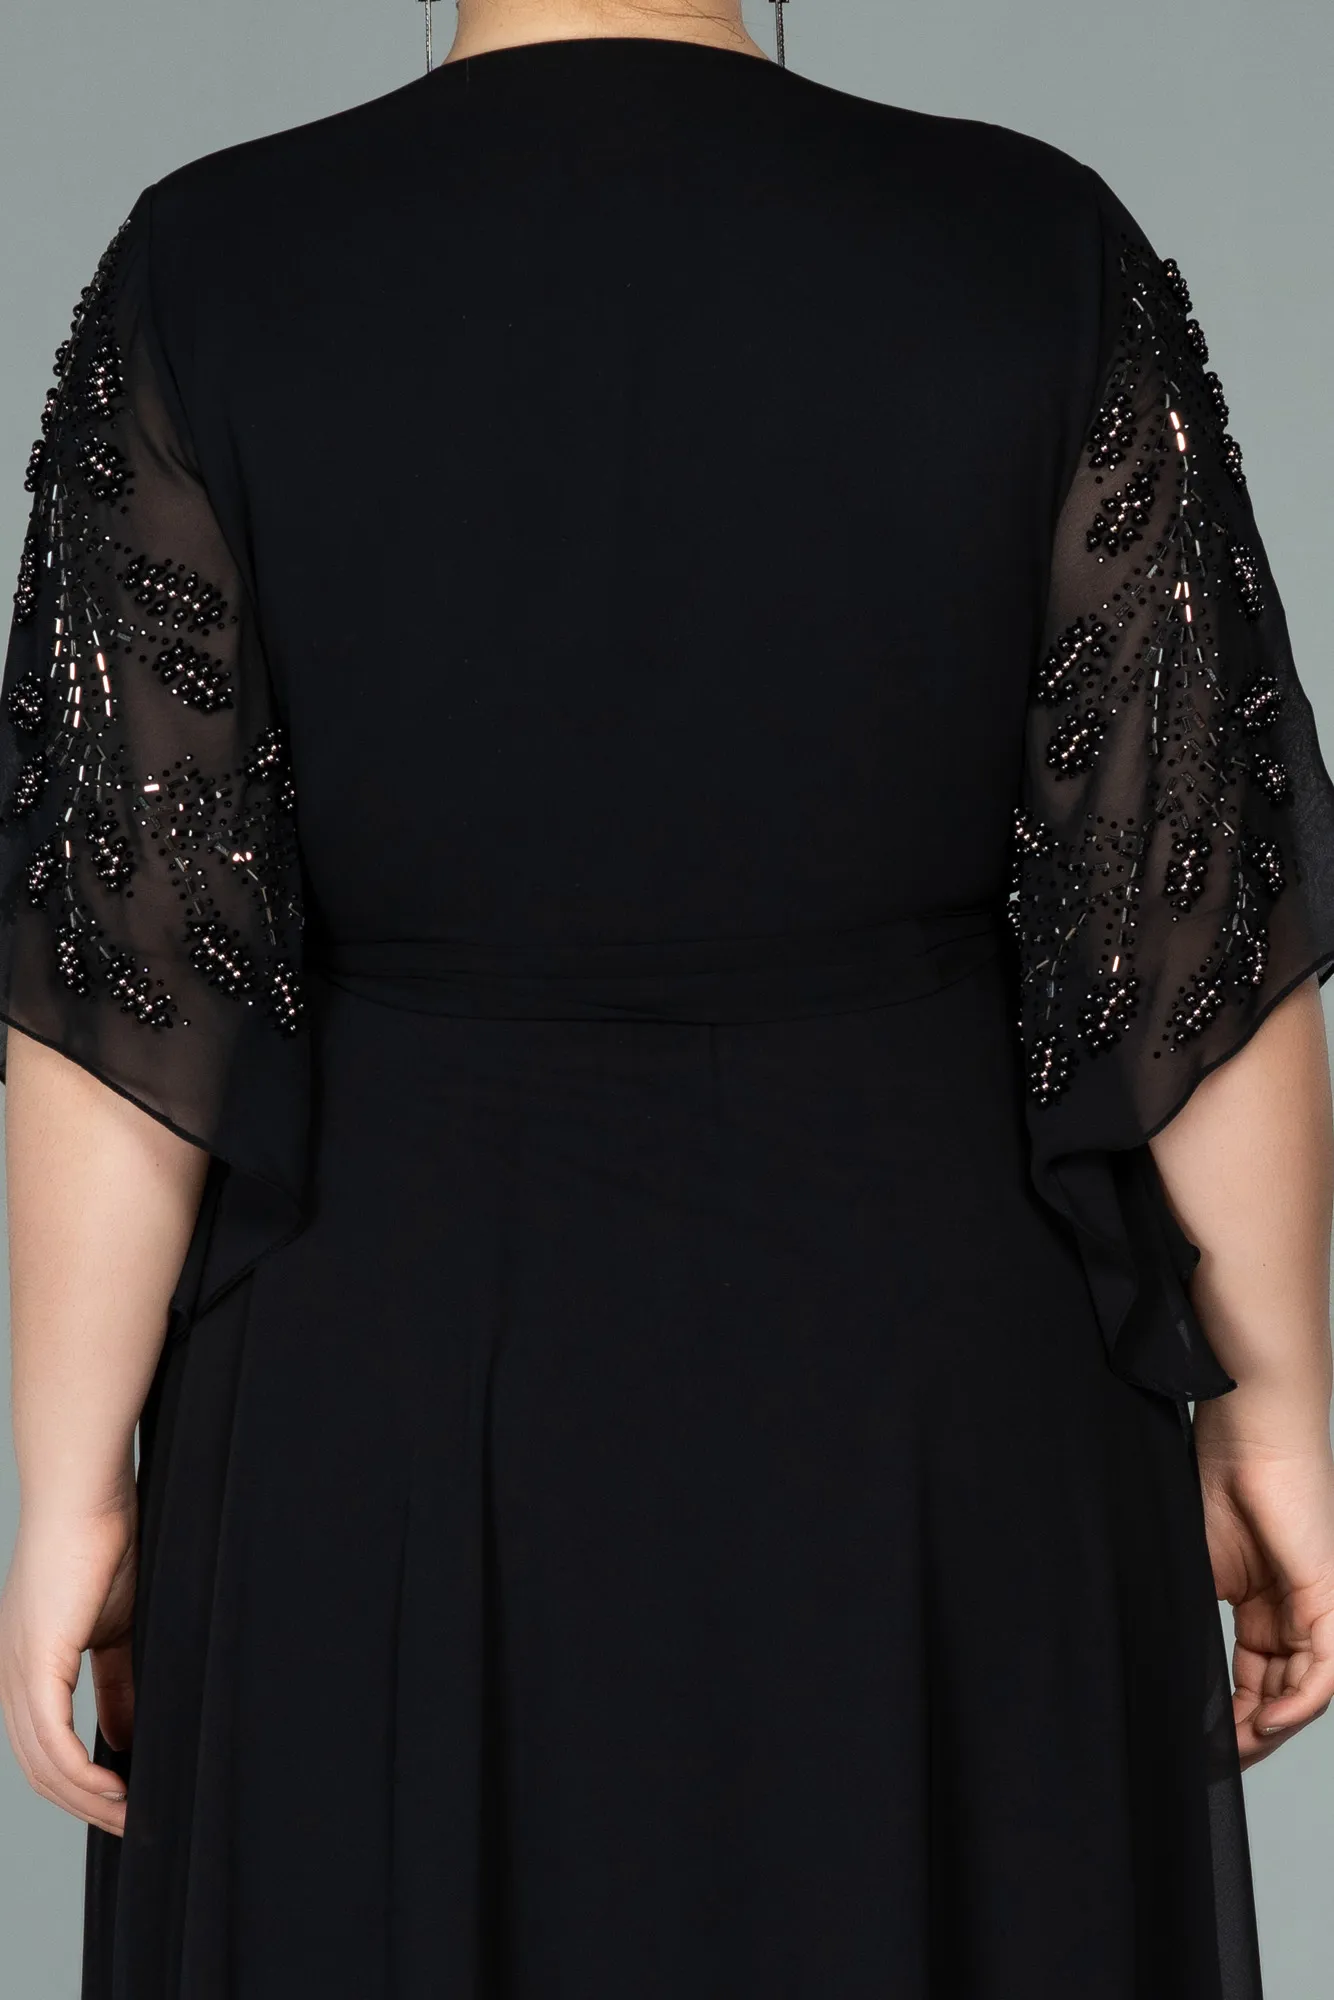 Black-Long Chiffon Plus Size Evening Dress ABU2071